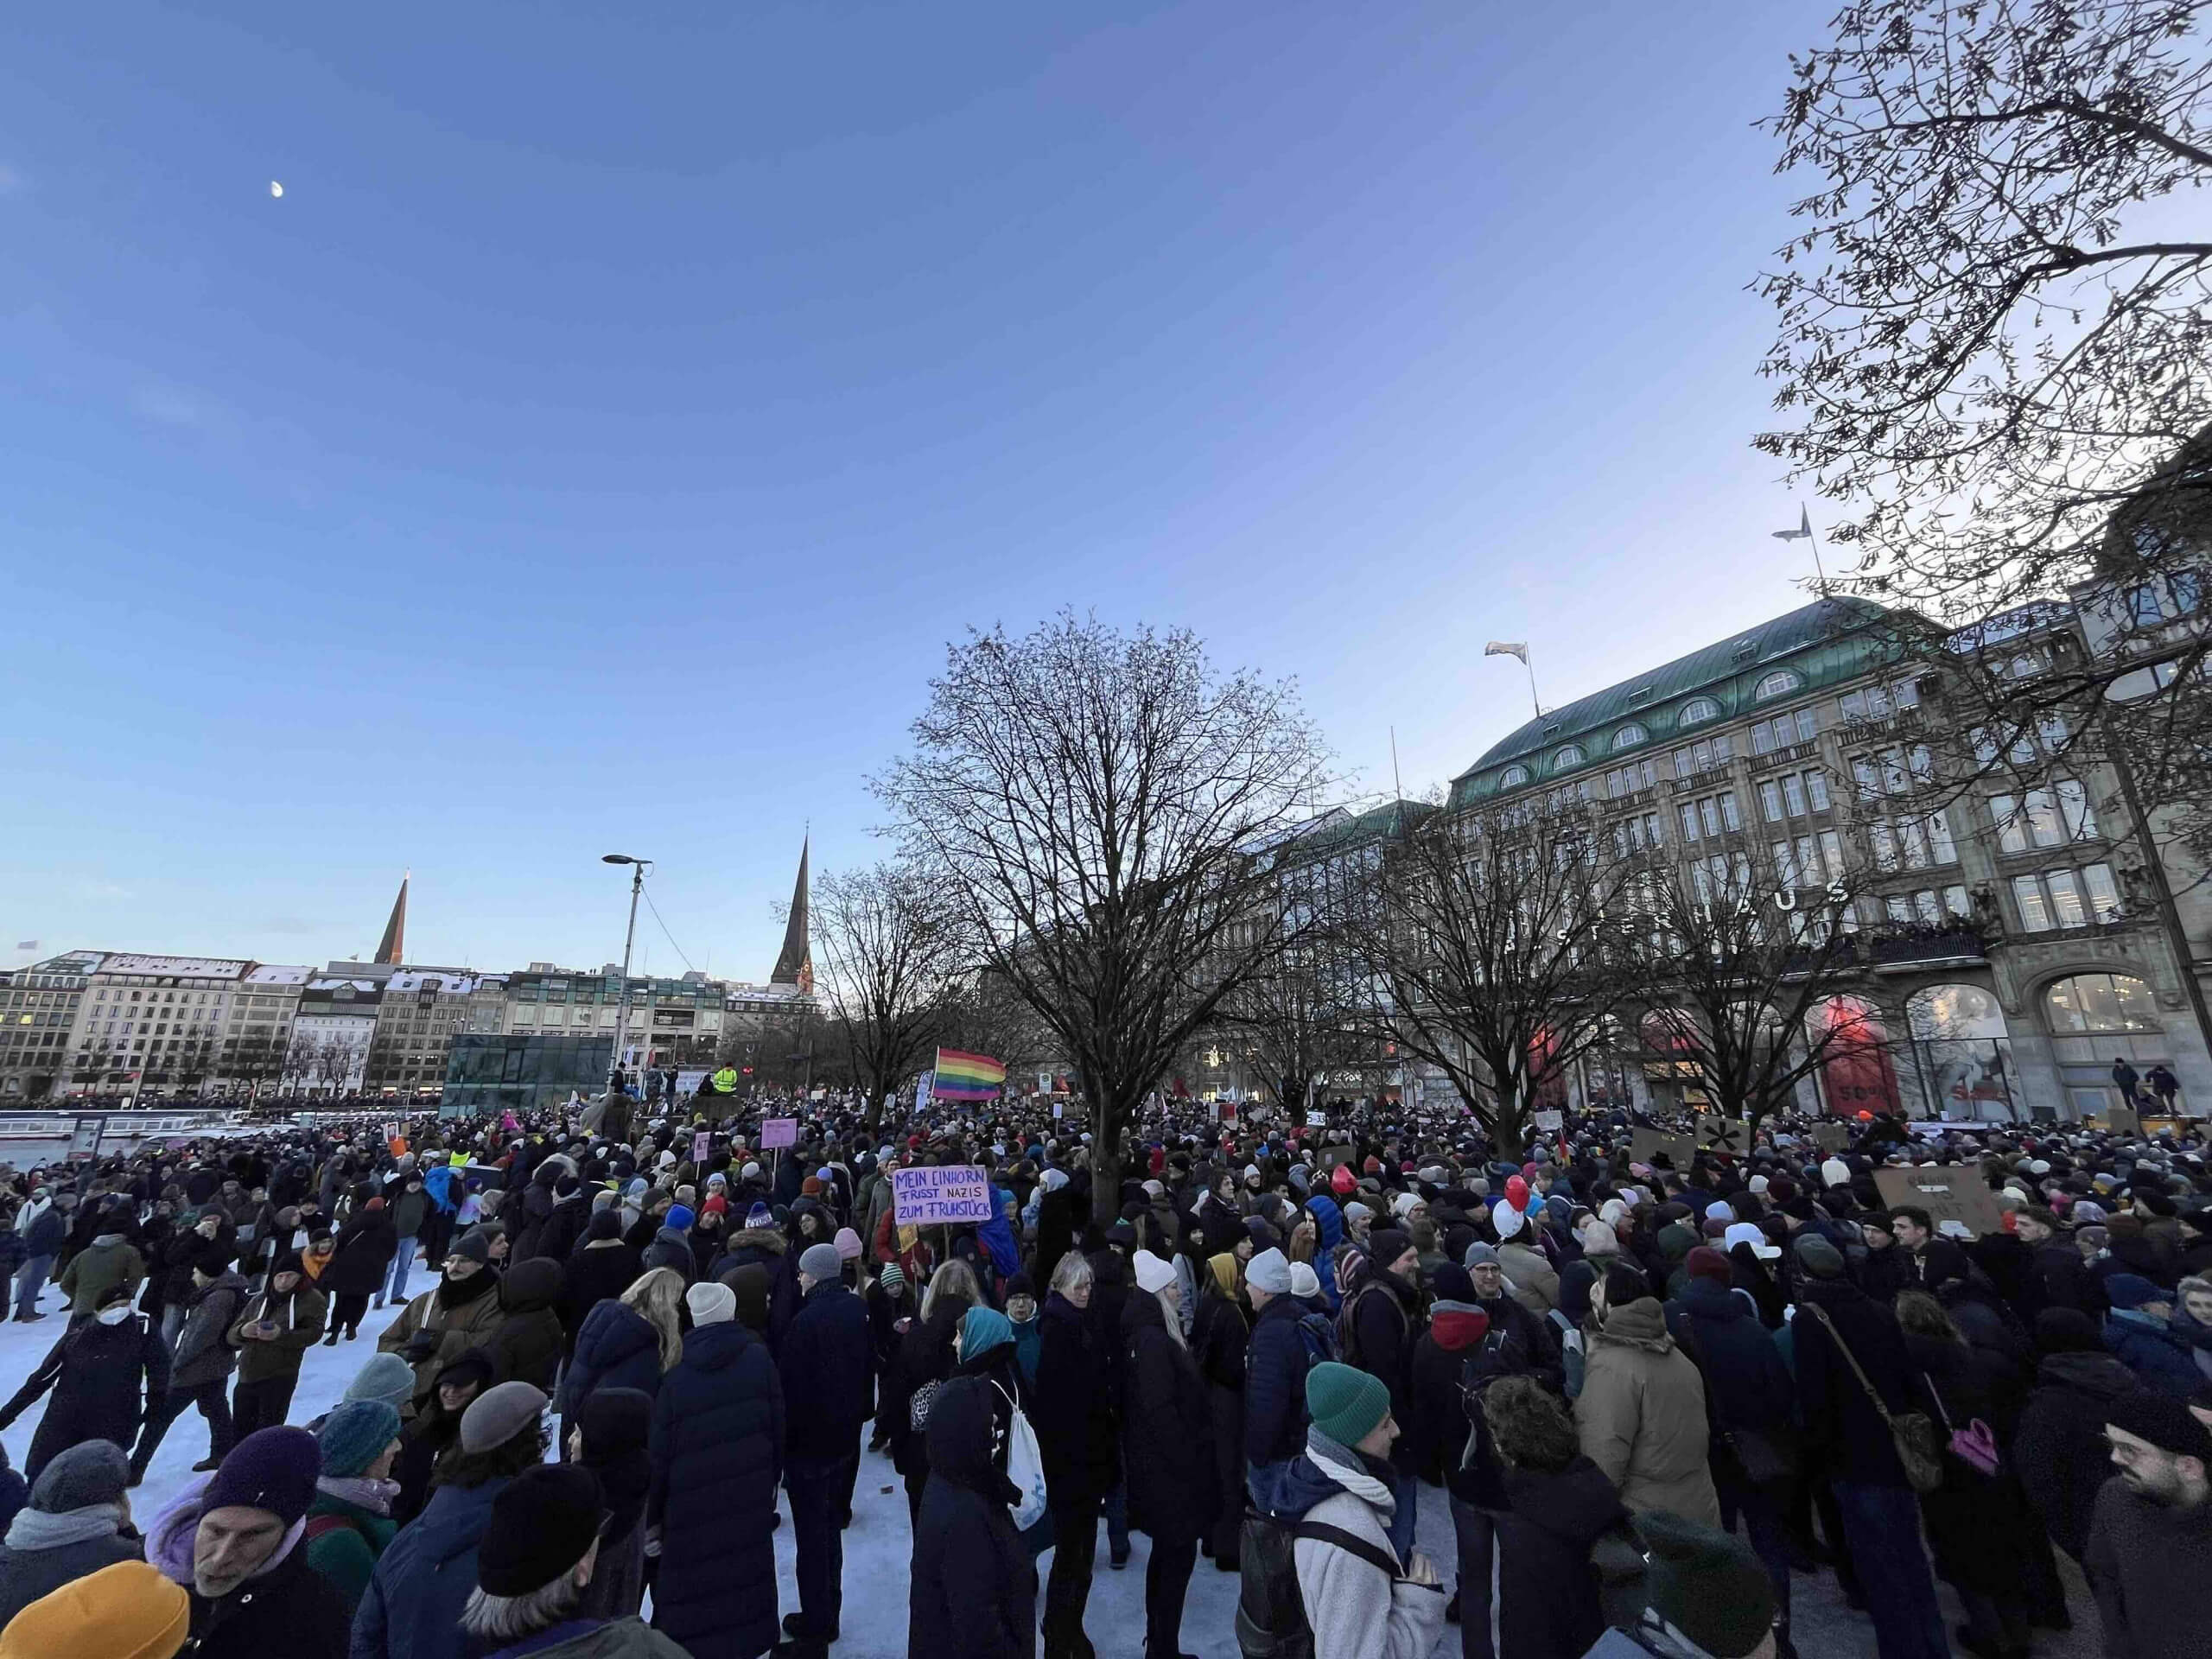 Dicht an dich stehen die Menschen in Hamburg bei der Demo gegen rechts. Aus dem Liveticker von Correctiv.